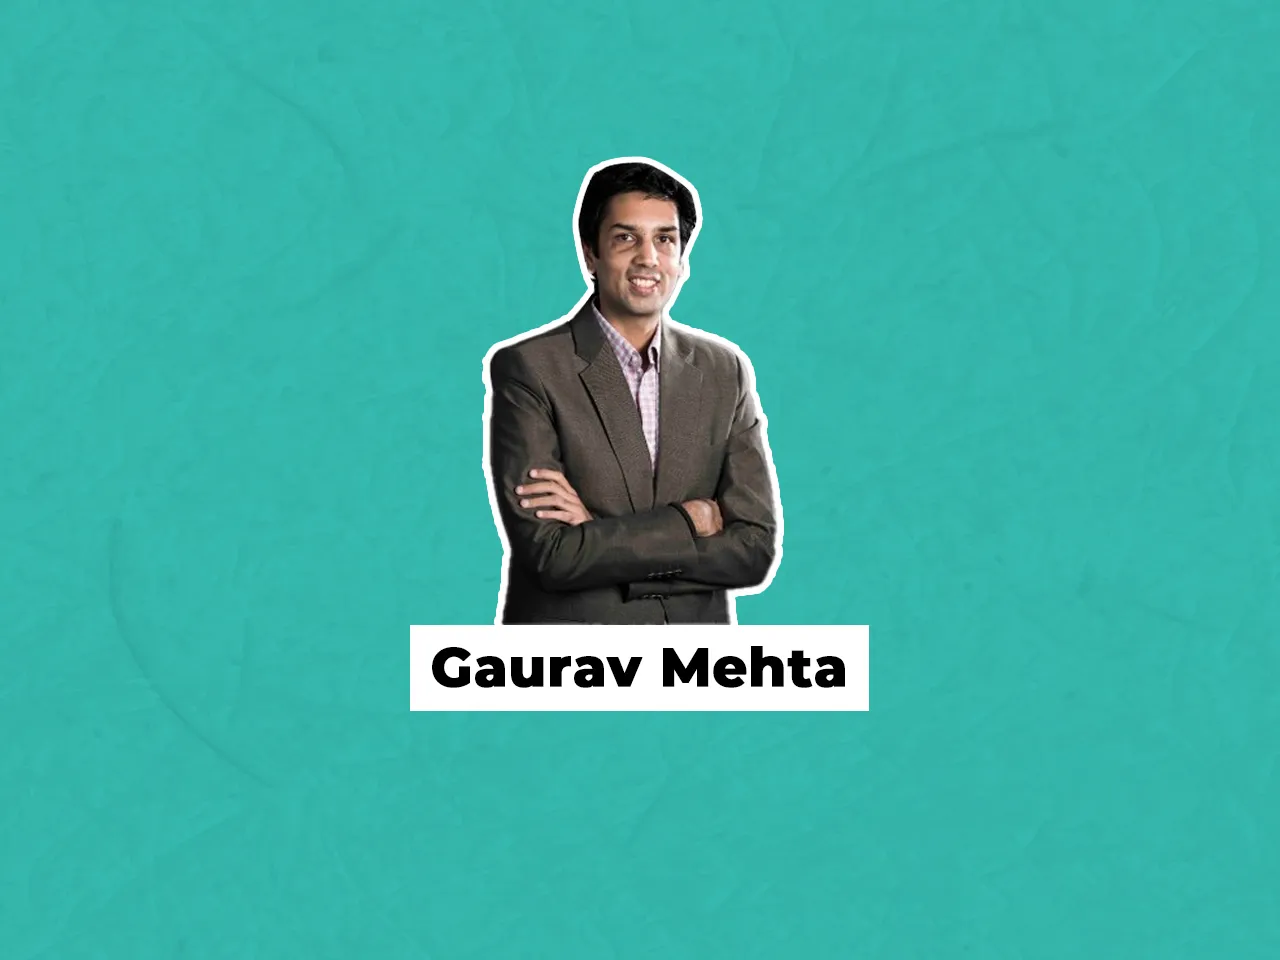 Gaurav Mehta